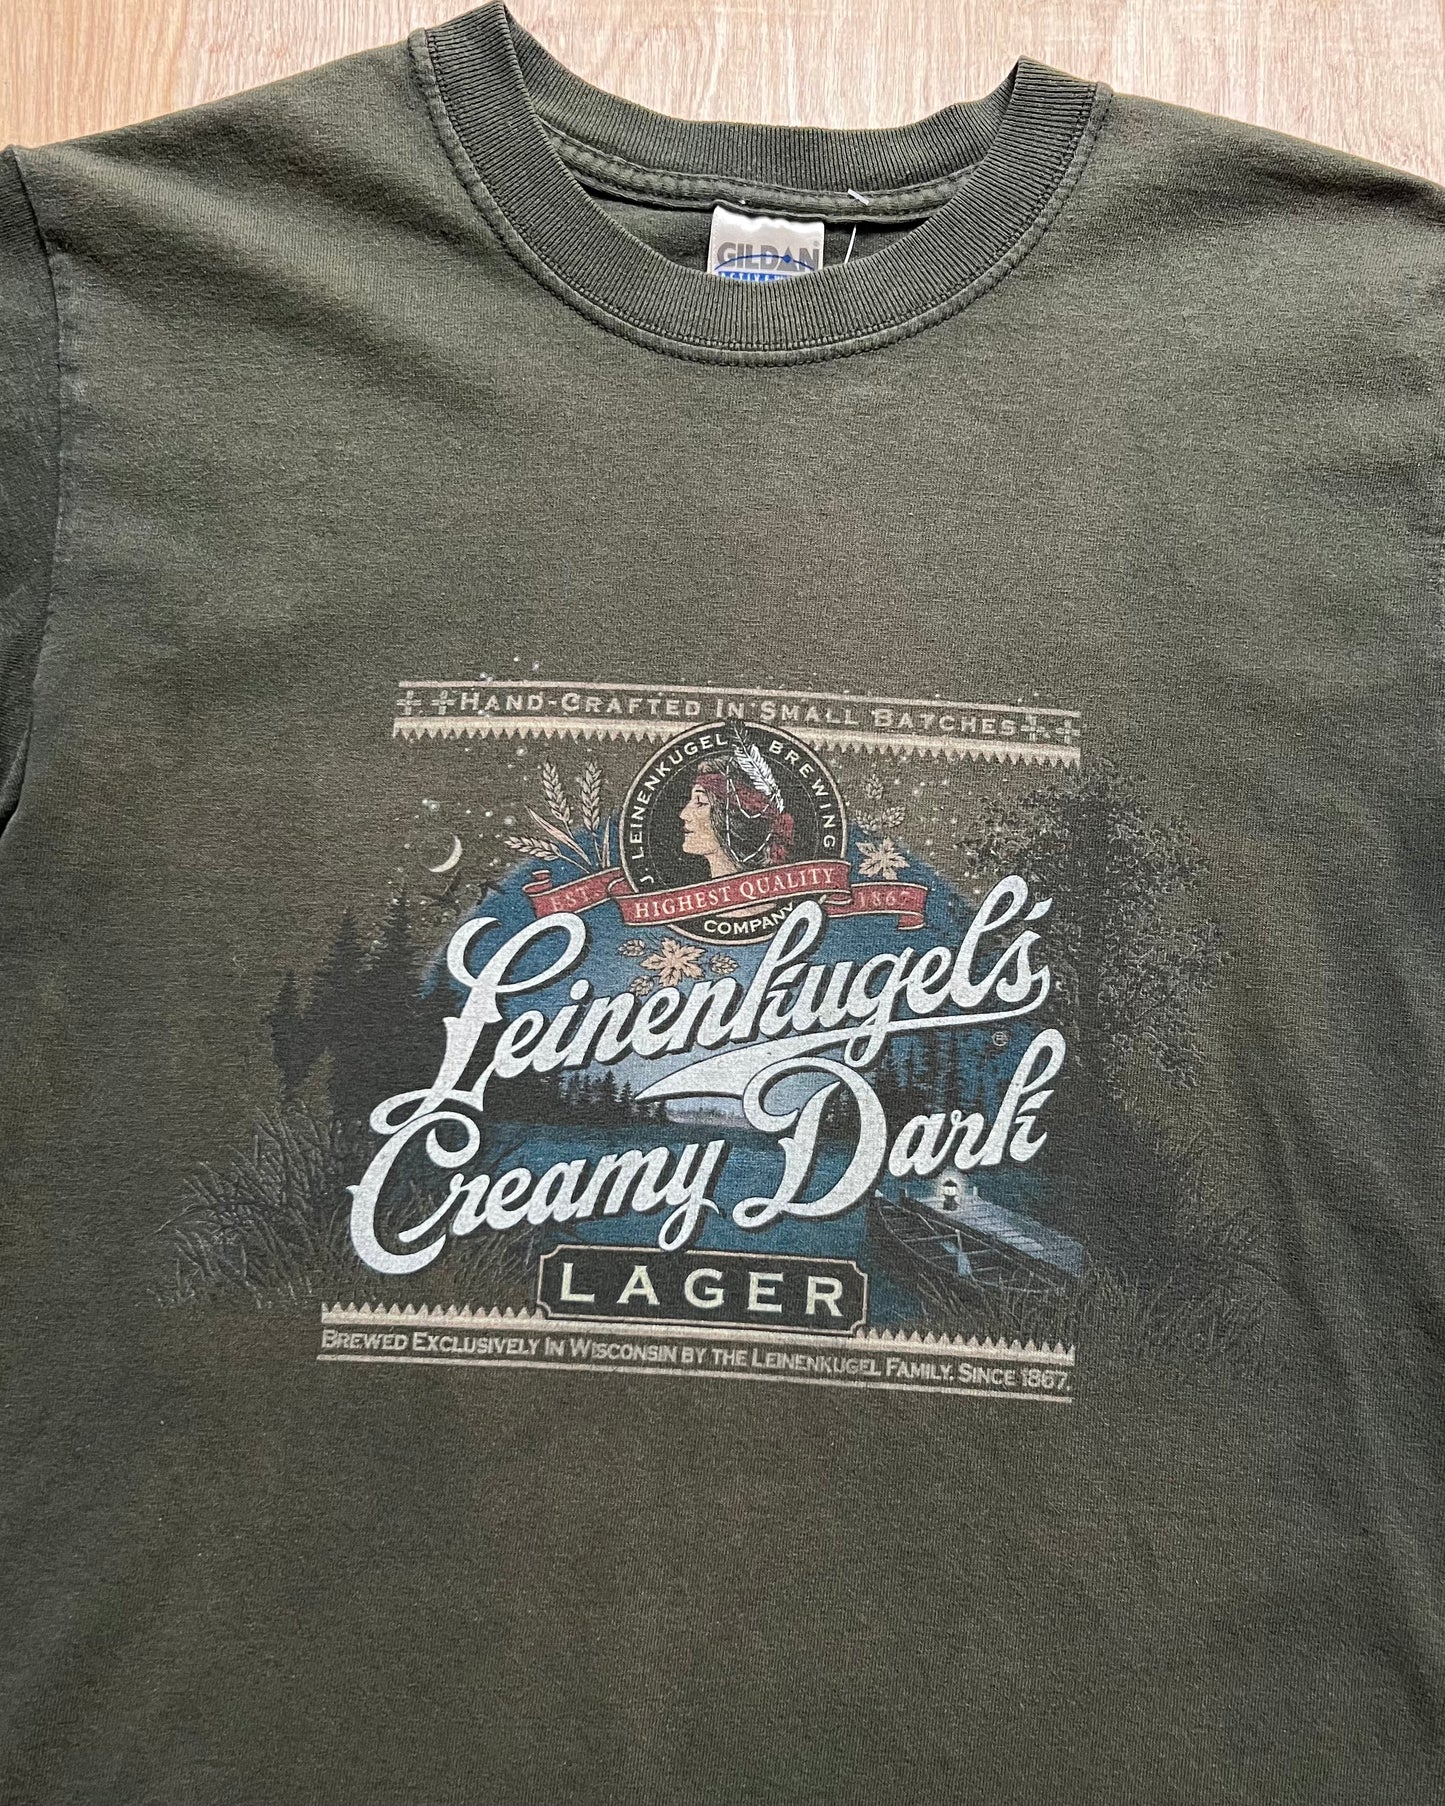 Vintage Leinenkugels Creamy Dark Lager T-Shirt